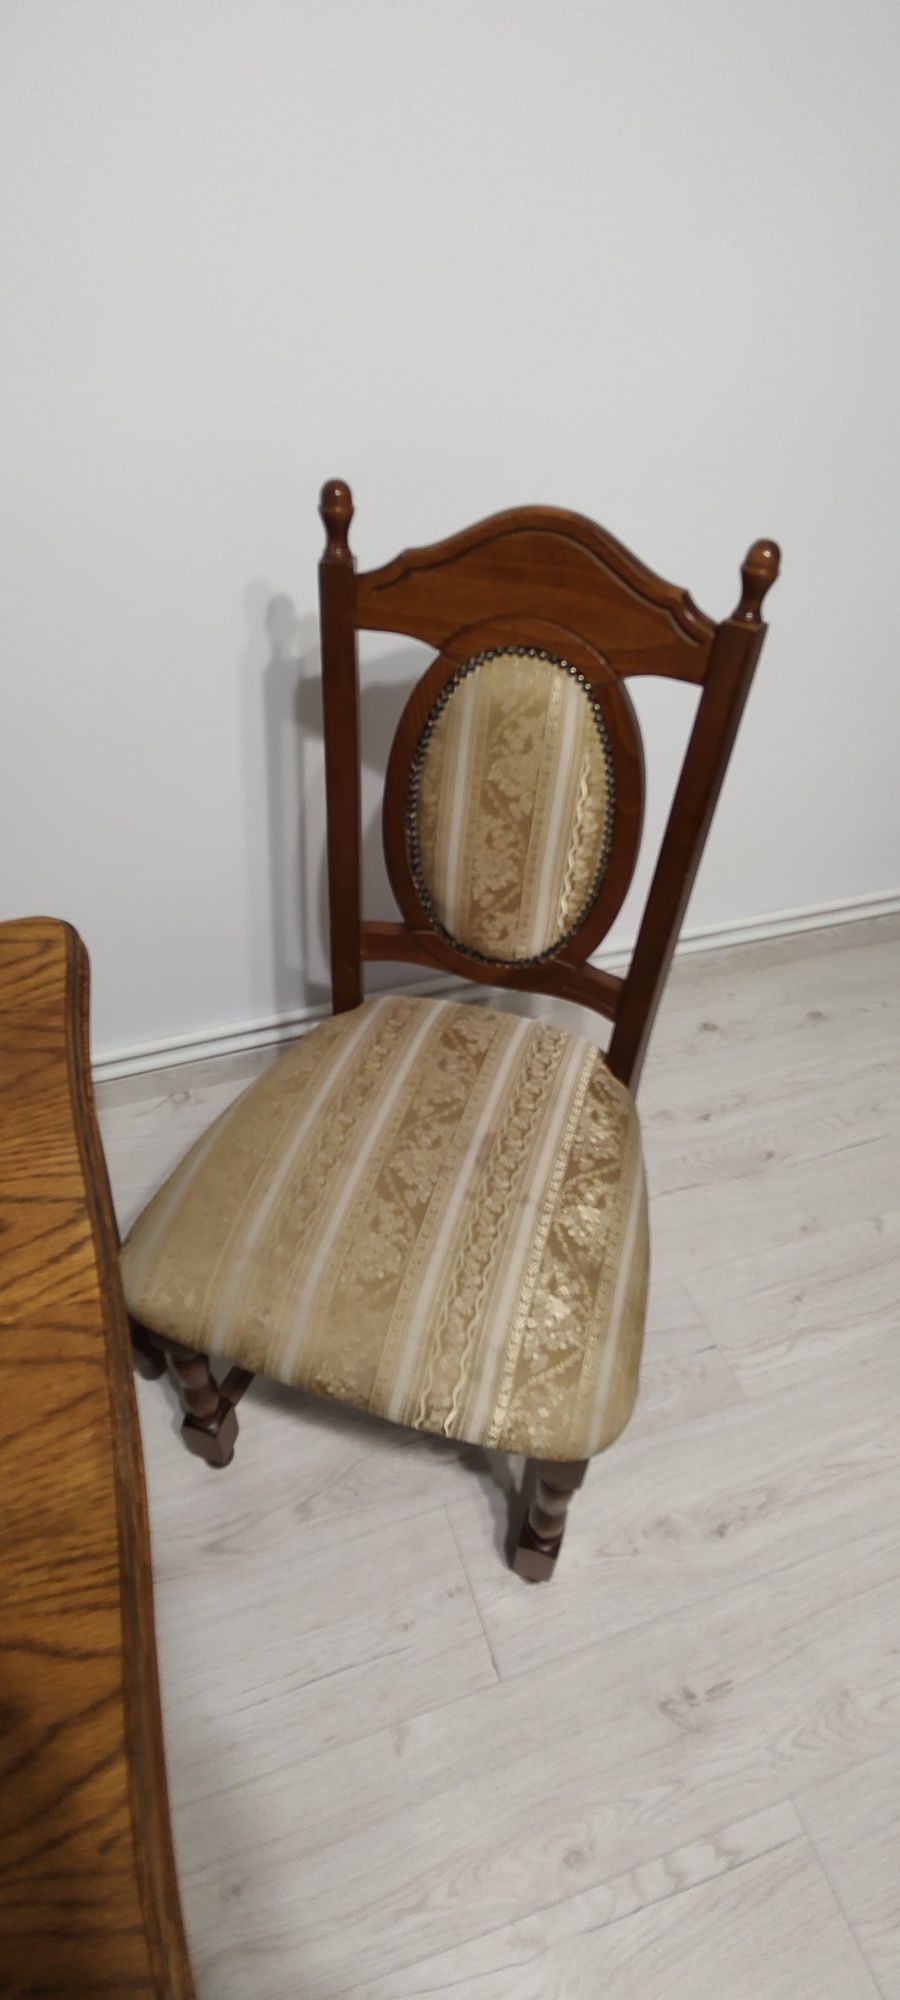 Vând masă și scaune vechi